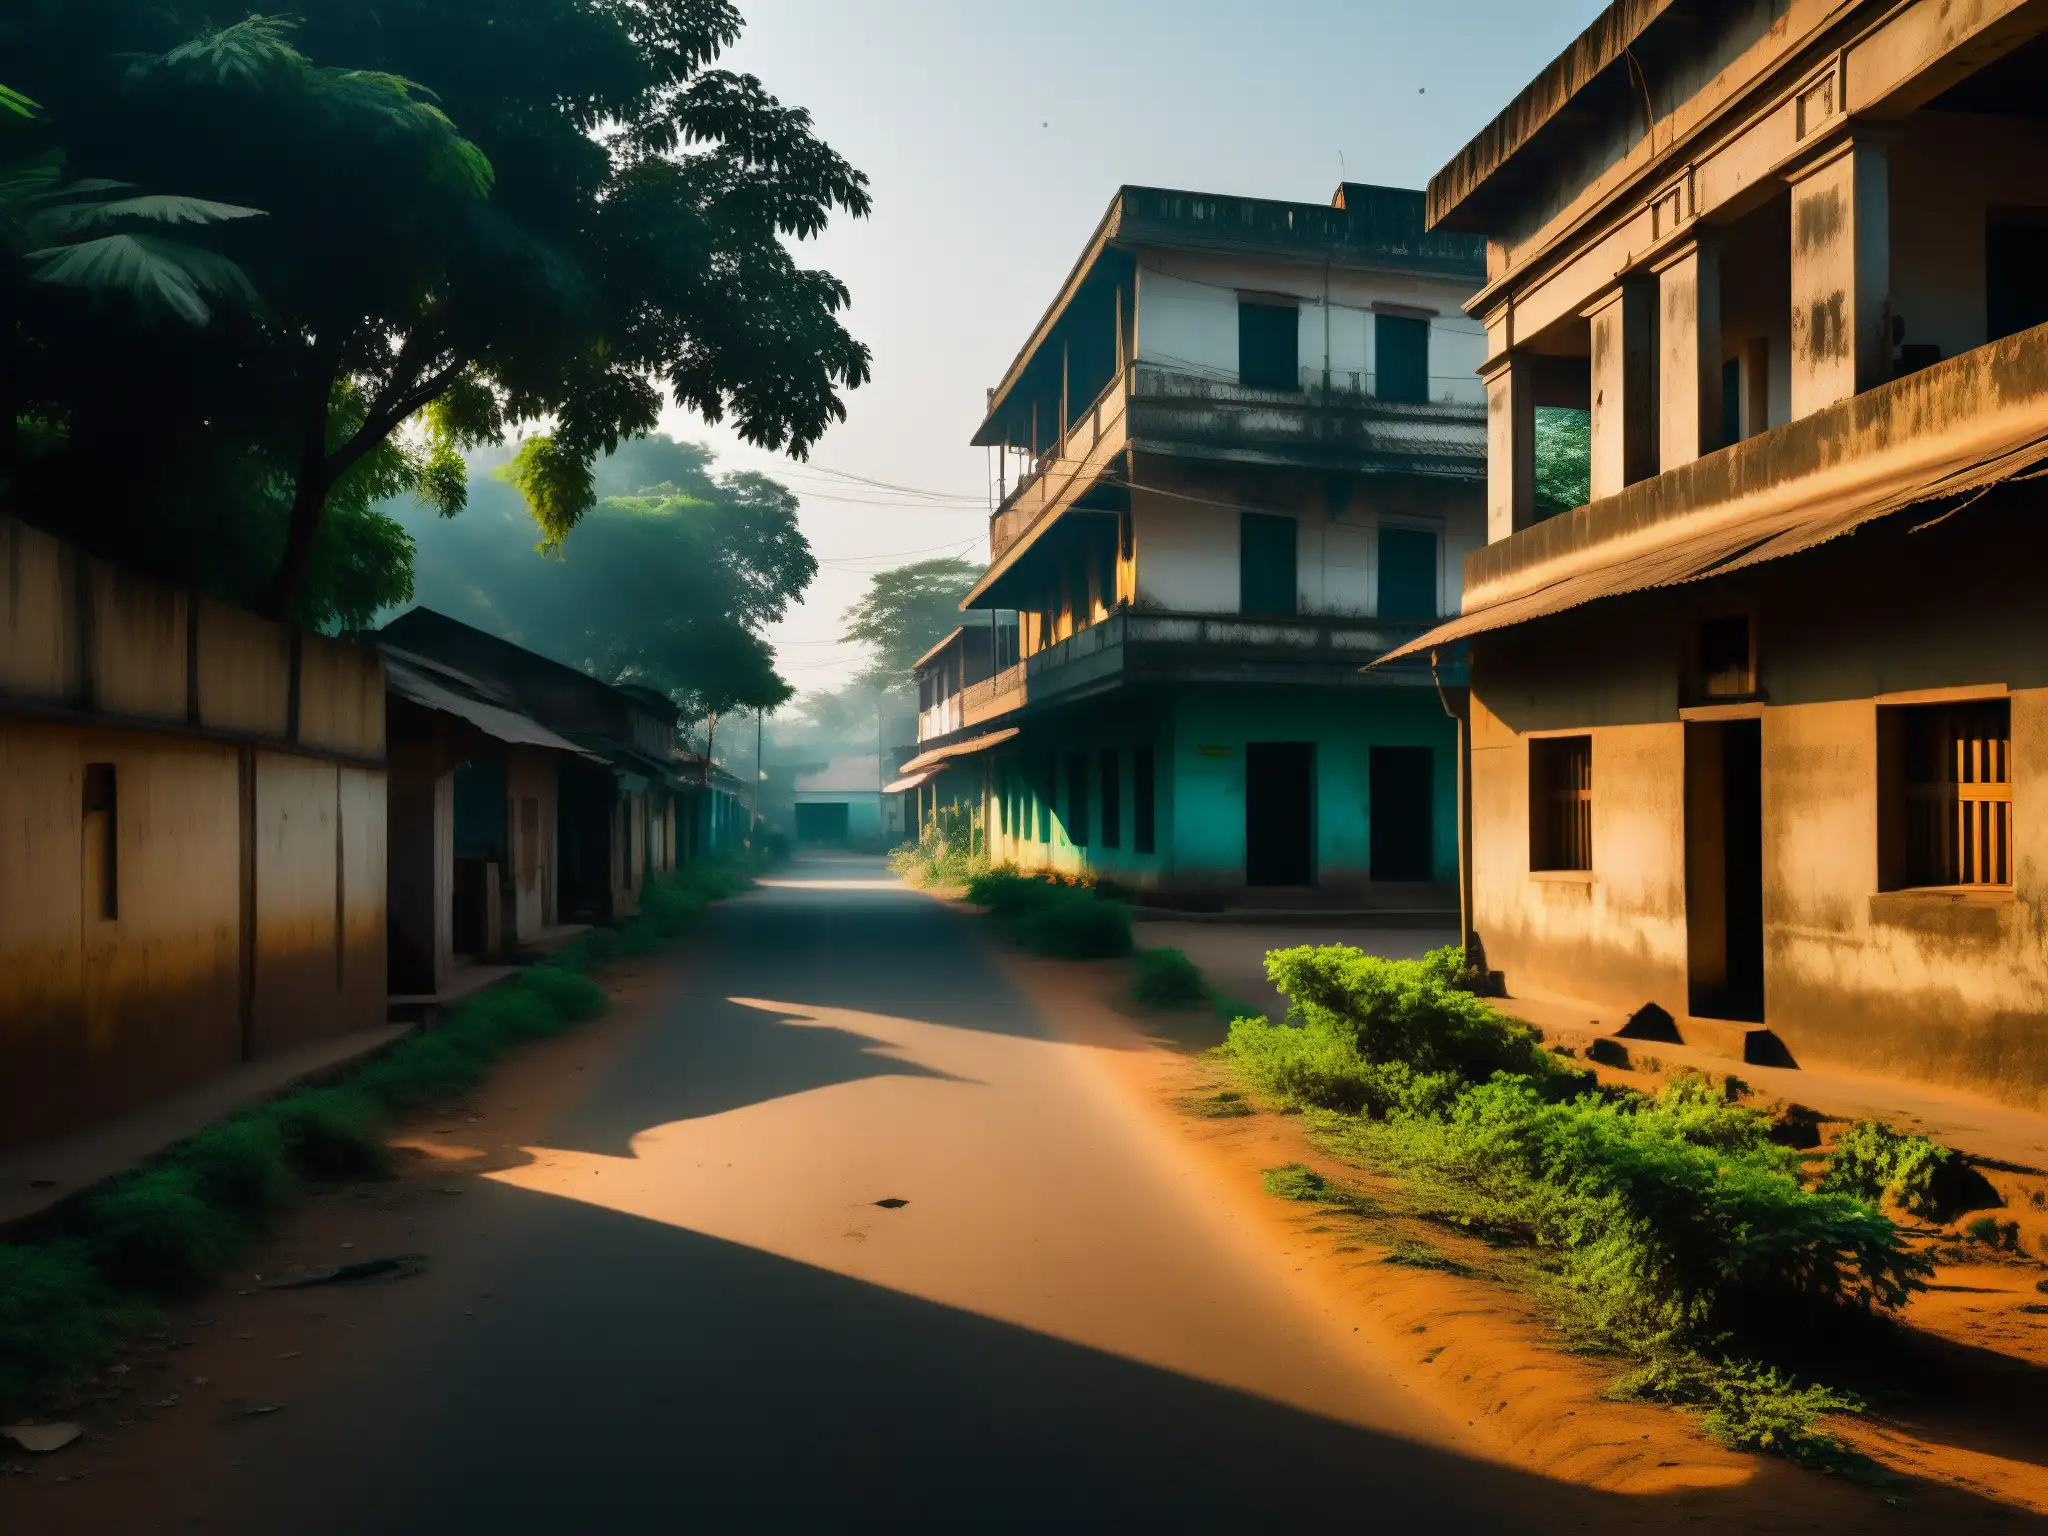 Imagen documental de una misteriosa calle en Nithari, India, evocando desolación y misterio